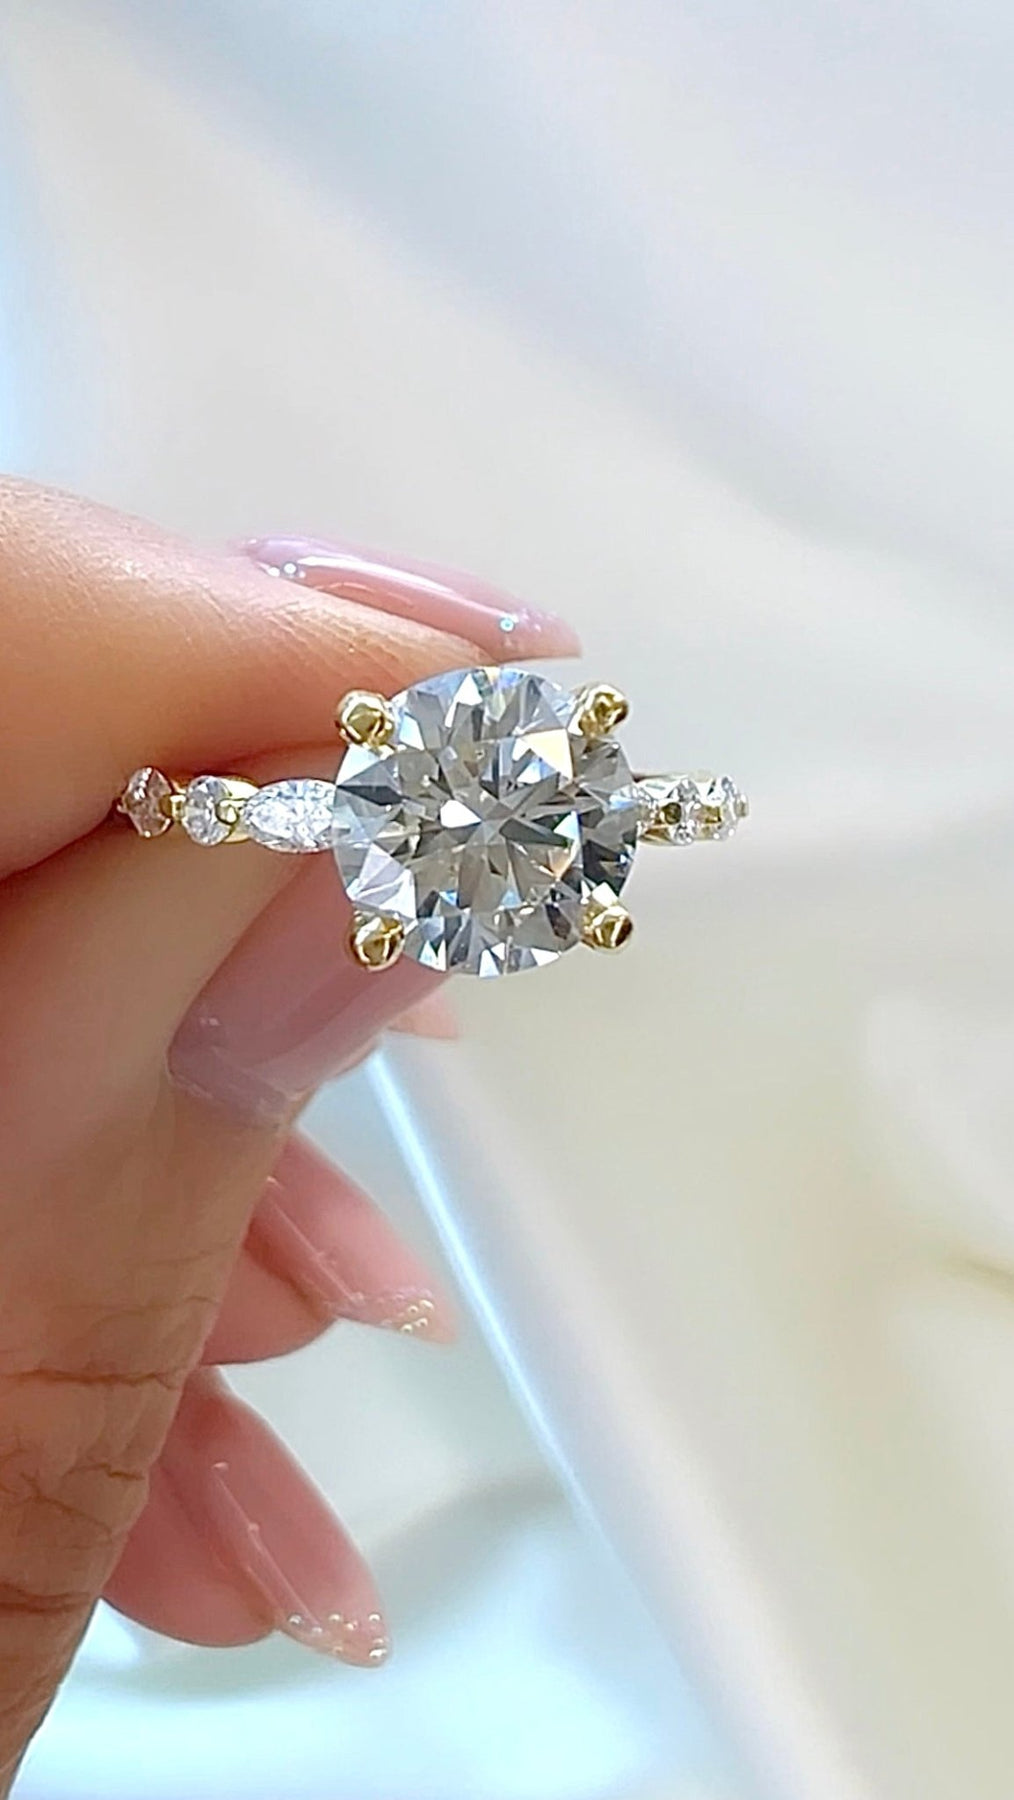 1.78CT Round Brilliant Cut Diamond Engagement Ring